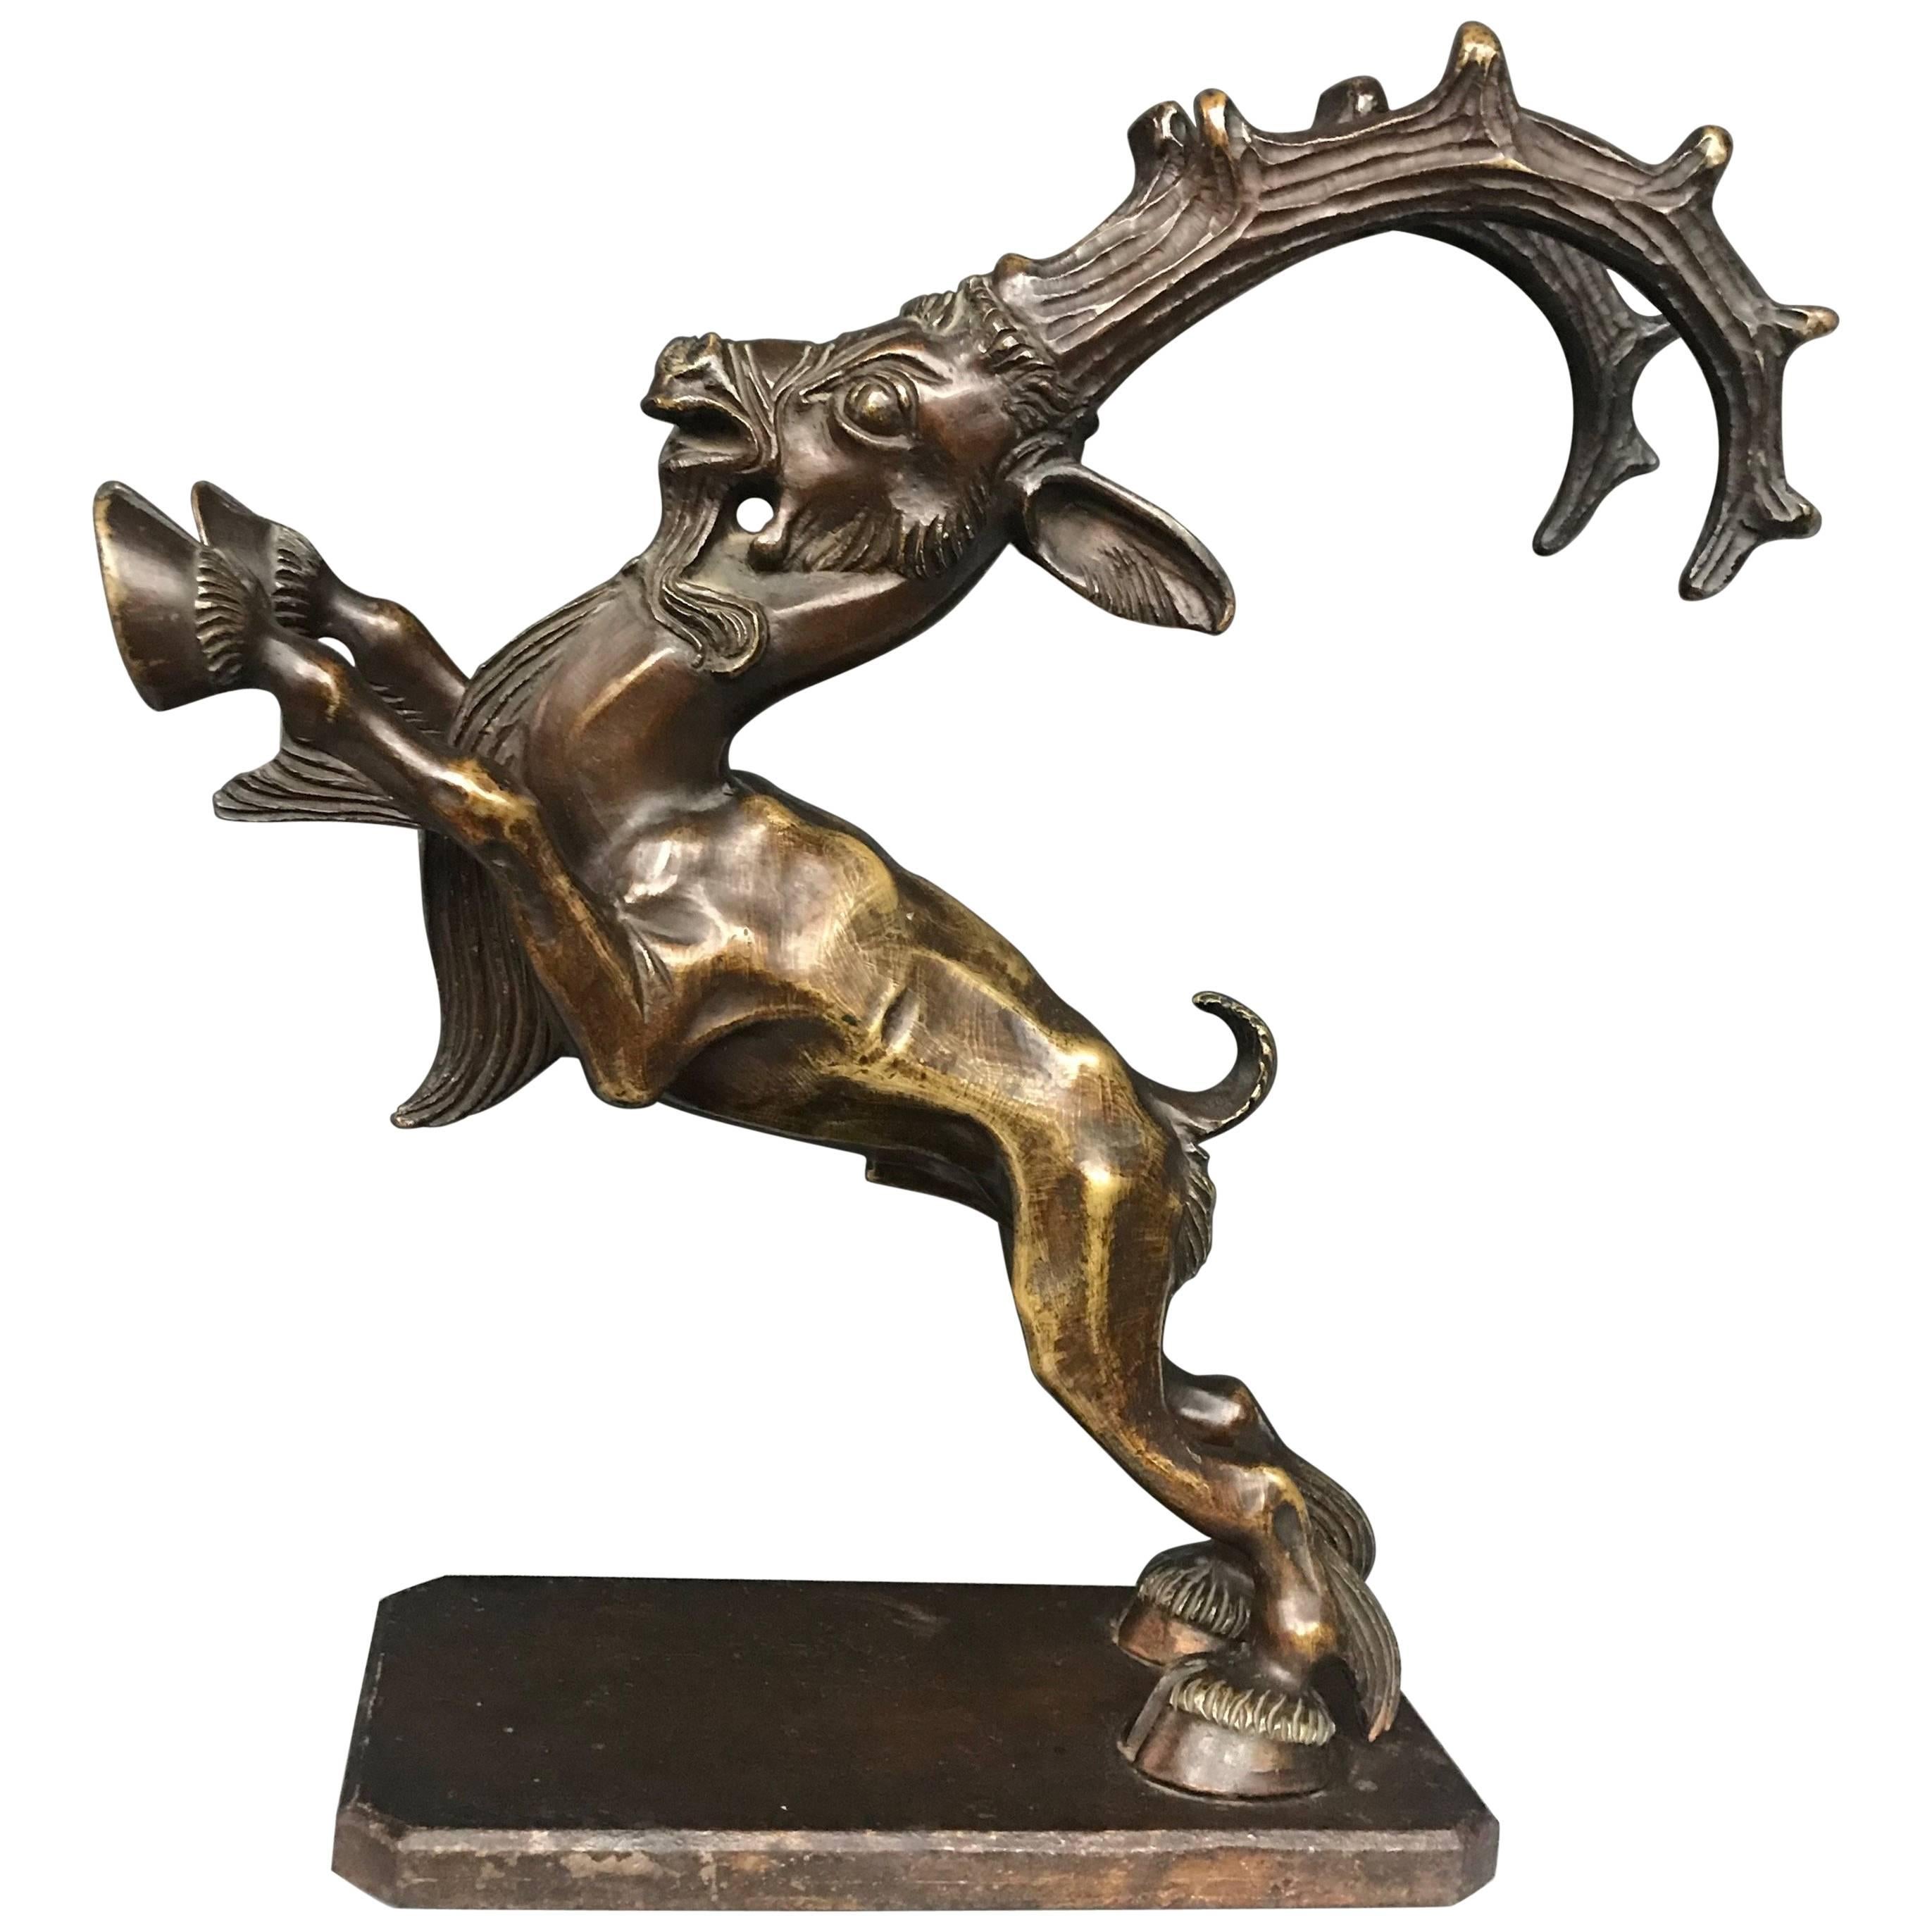 Seltene expressionistische Bronzeskulpturstatue eines Capricorns, Ibex in Top-Qualität, frühe 1900er Jahre 